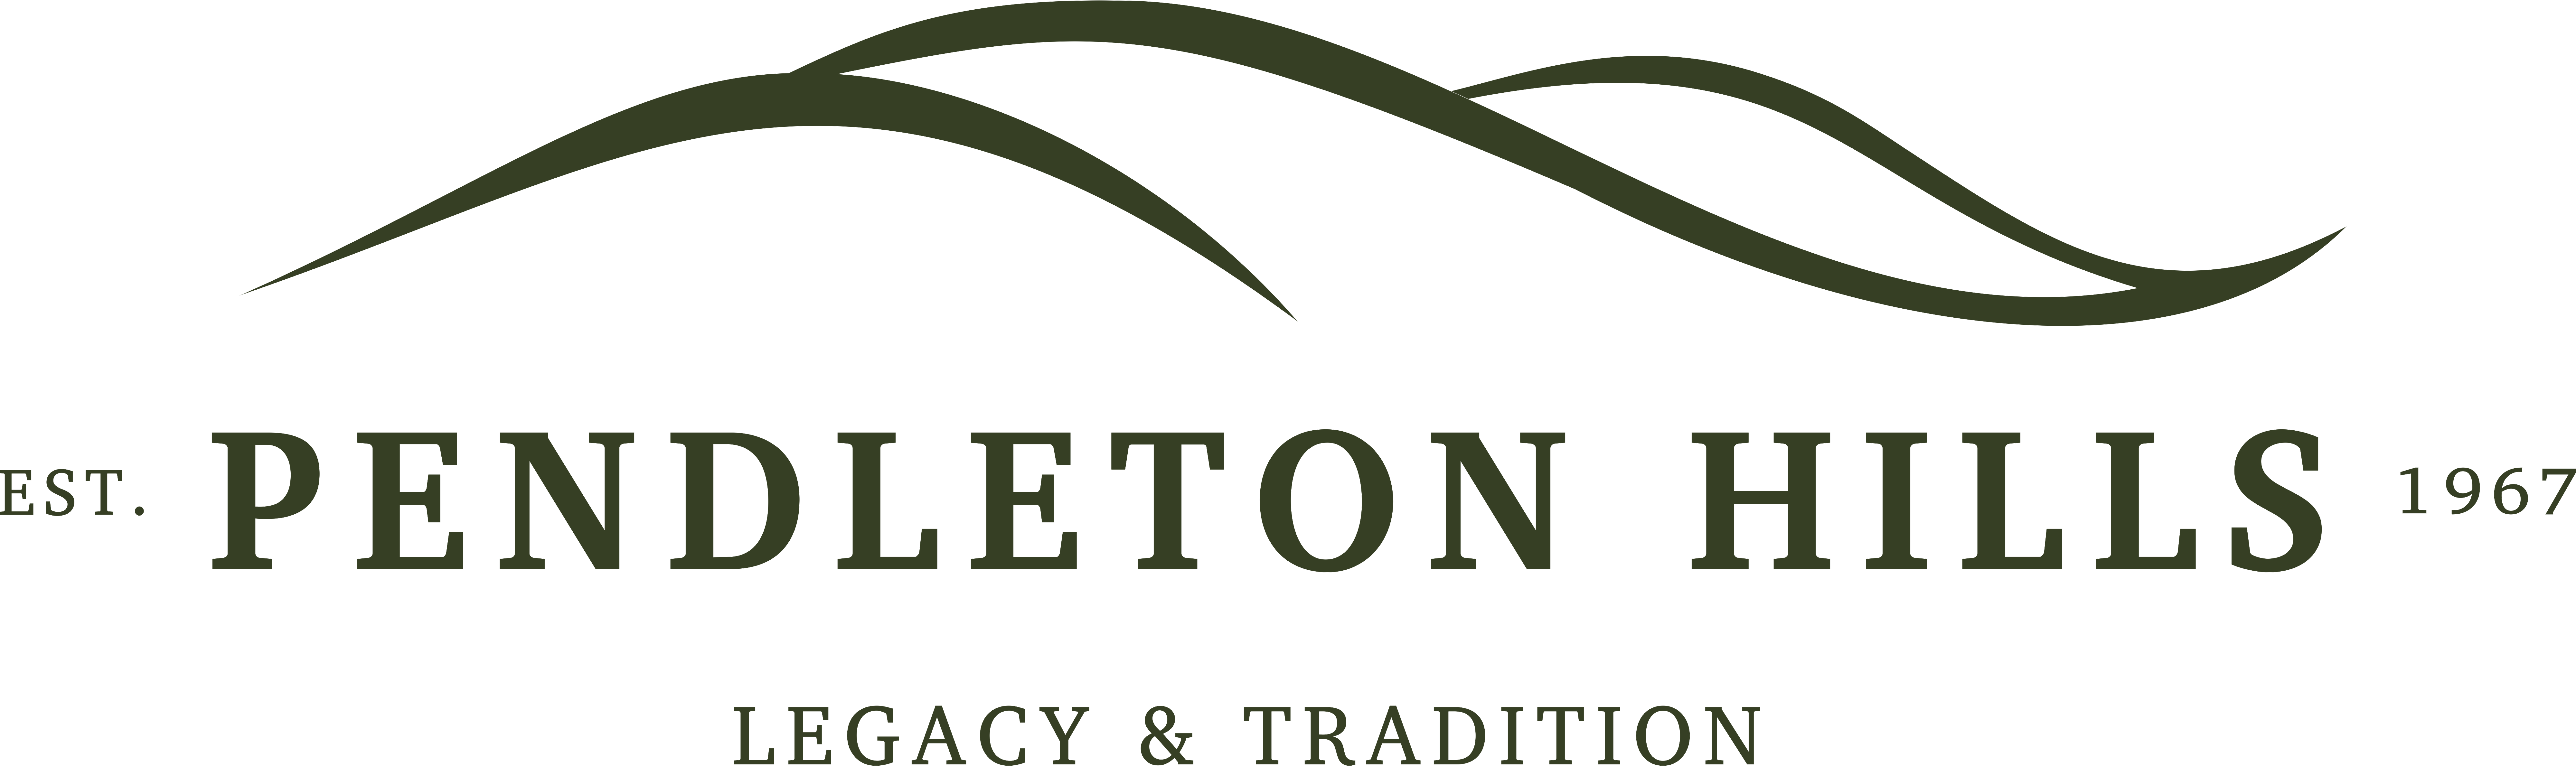 Pendleton-Hills-Logo-Green